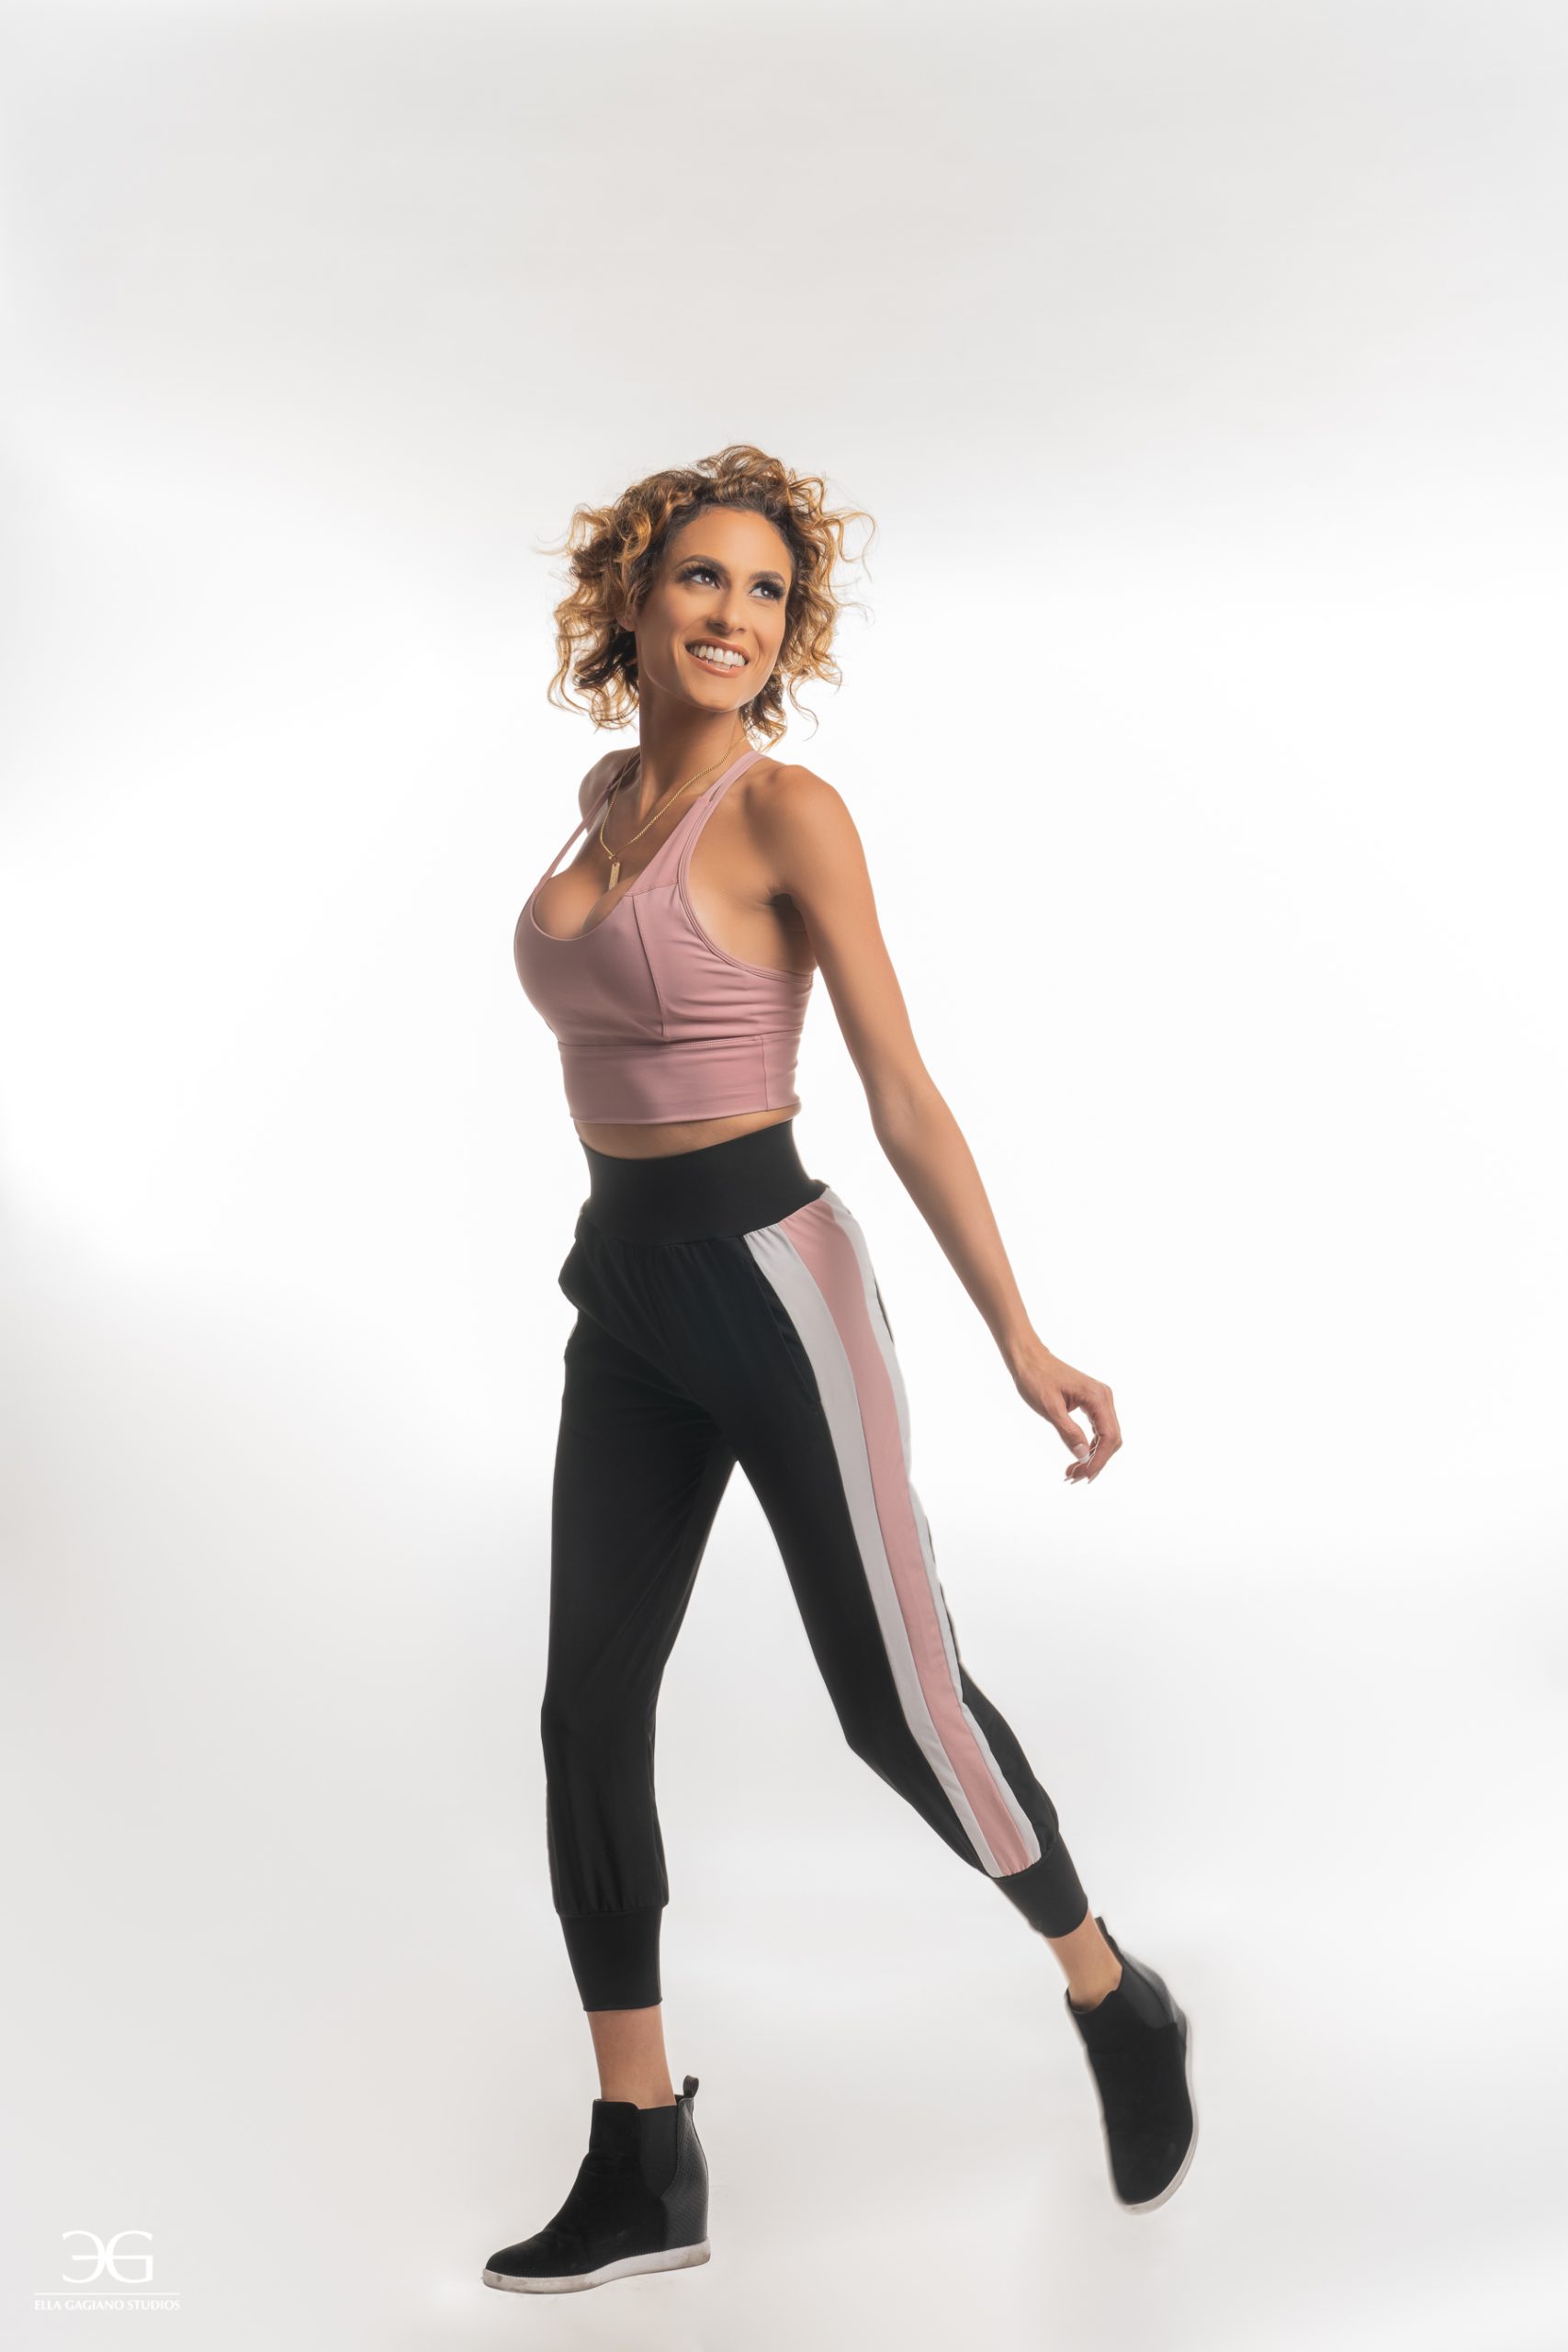 A Full-Length Body Shot Model Portfolio pink gym clothes